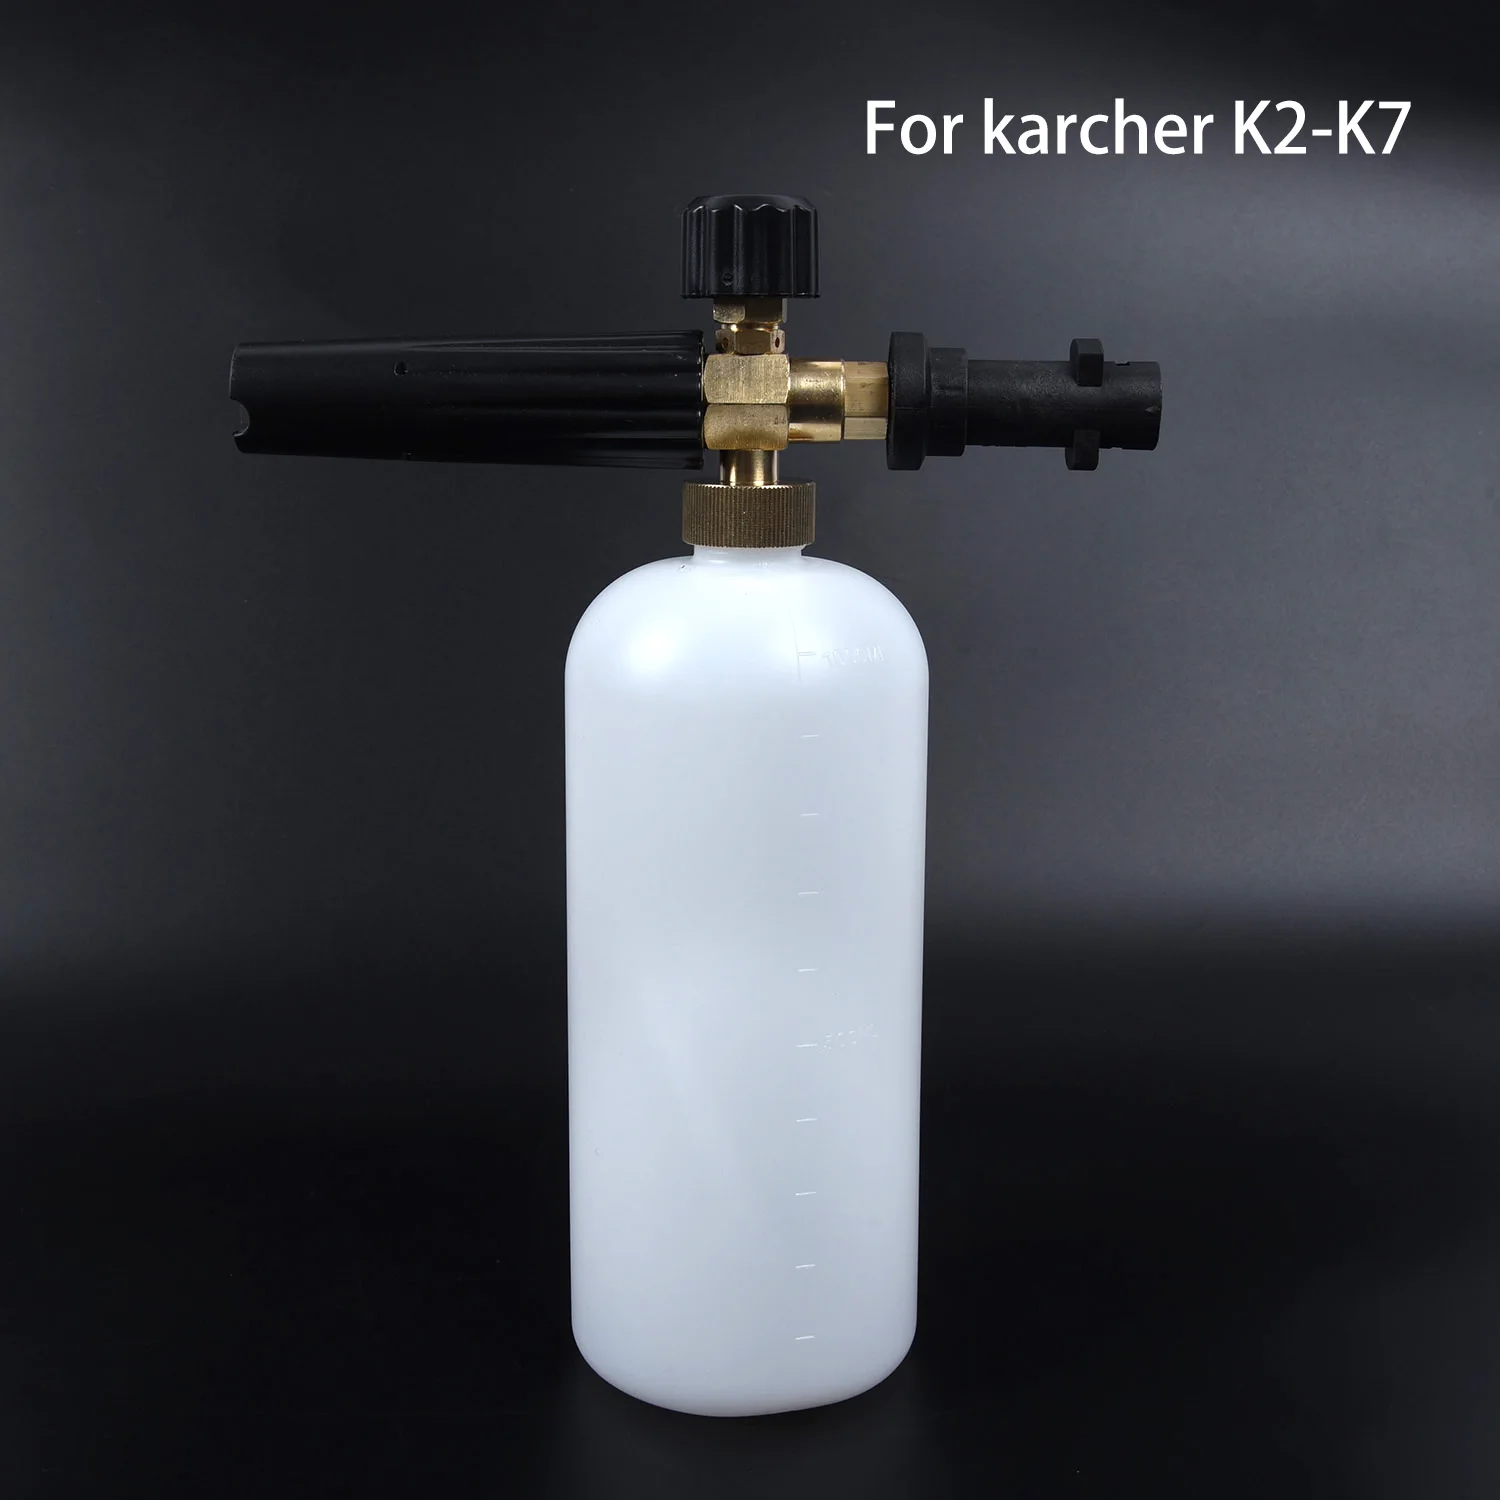 1 шт. пенопласт для Karcher K2-K7 высокого давления, пенопластовая пушка, все пластиковые портативные насадки для пенообразователя, автомойка, мыльный распылитель